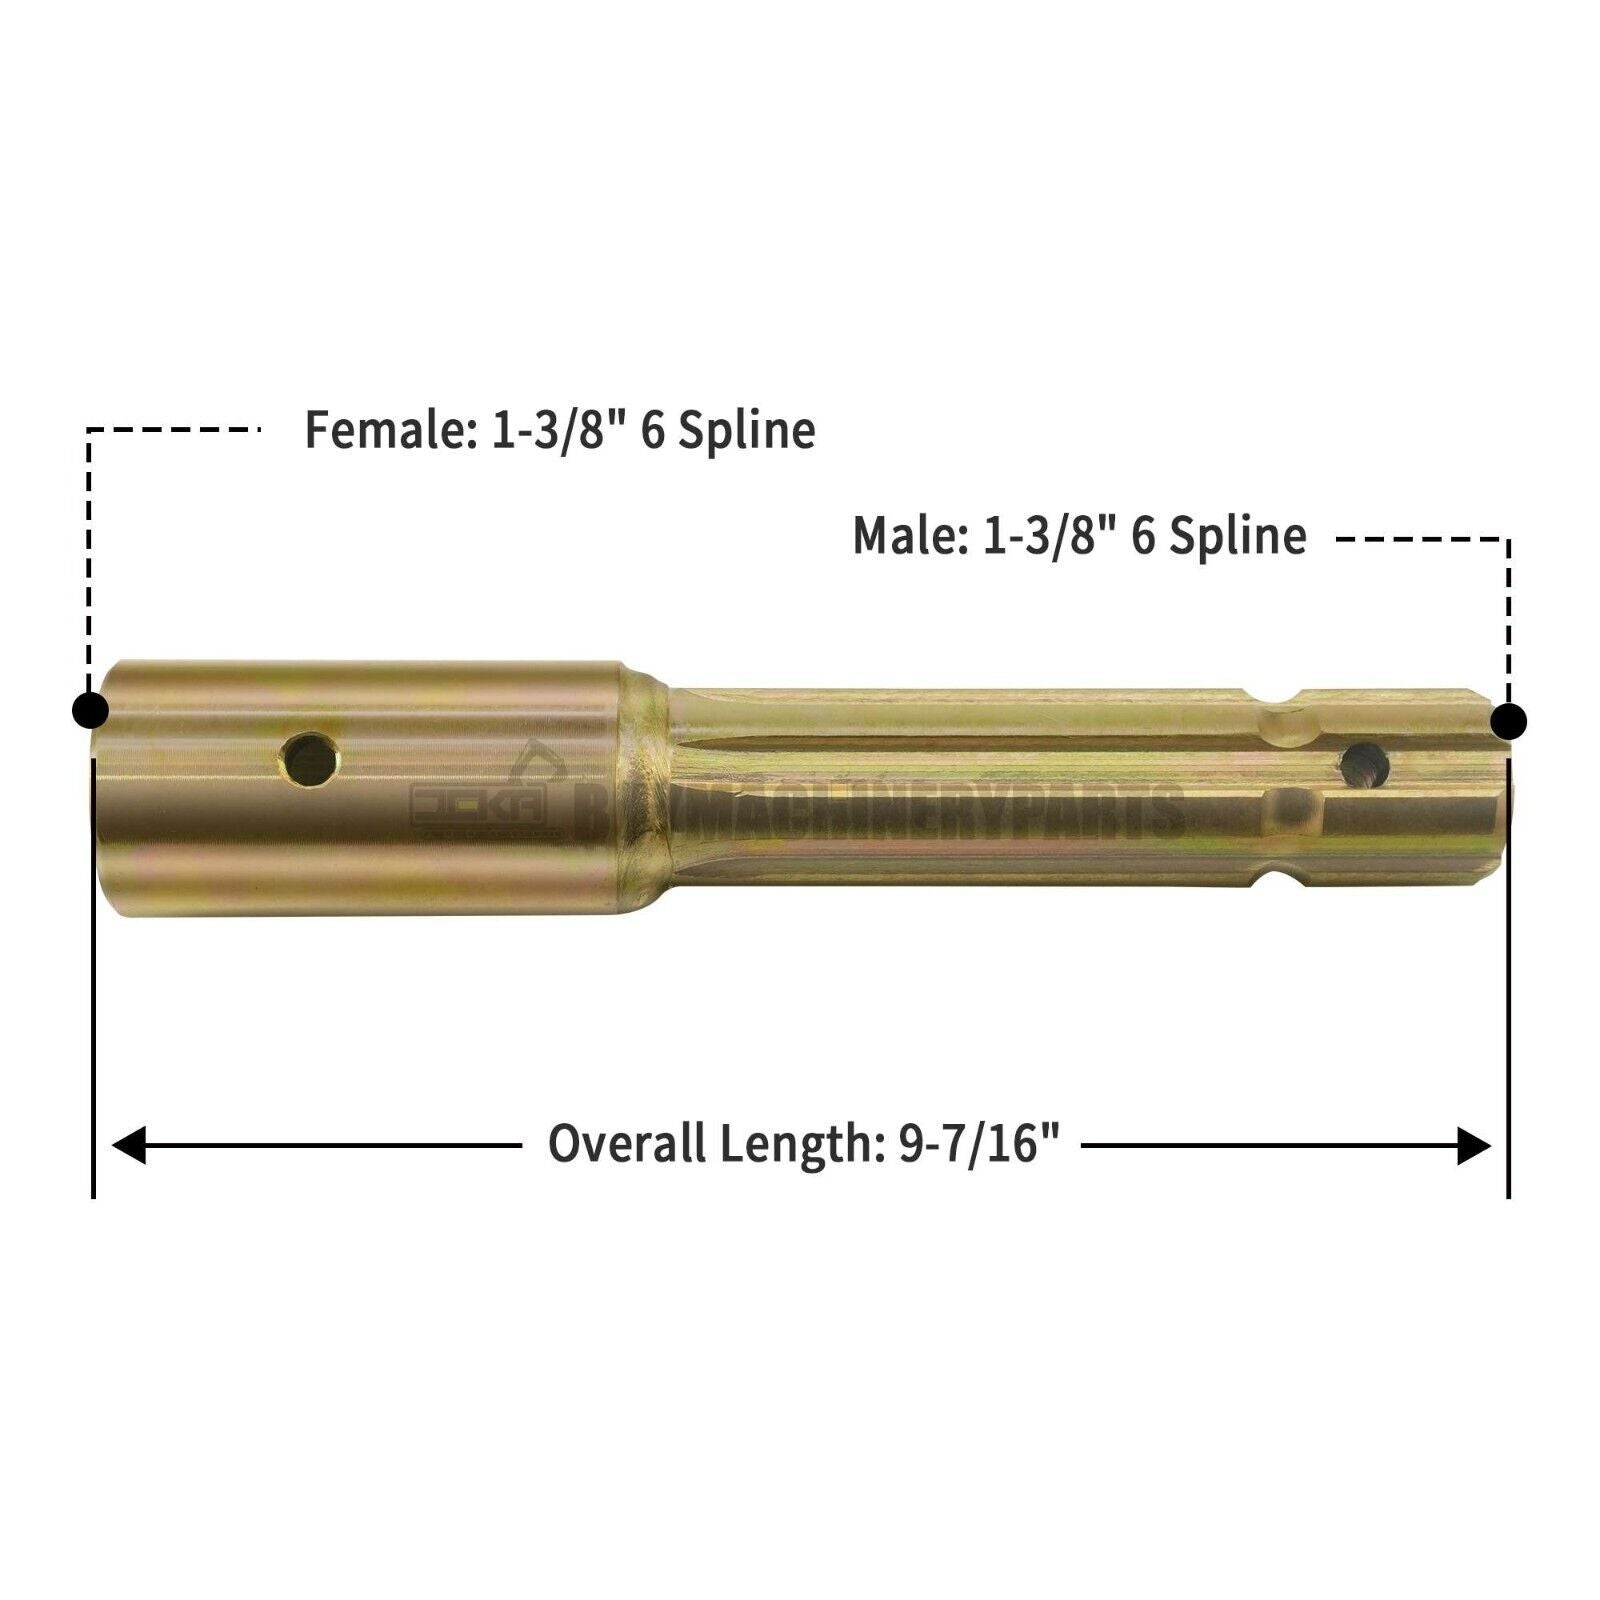 PTO Extender Adapter 1-1/8 6 Spline Male, 1-3/8 6 Spline Female, 9-7/16 Length